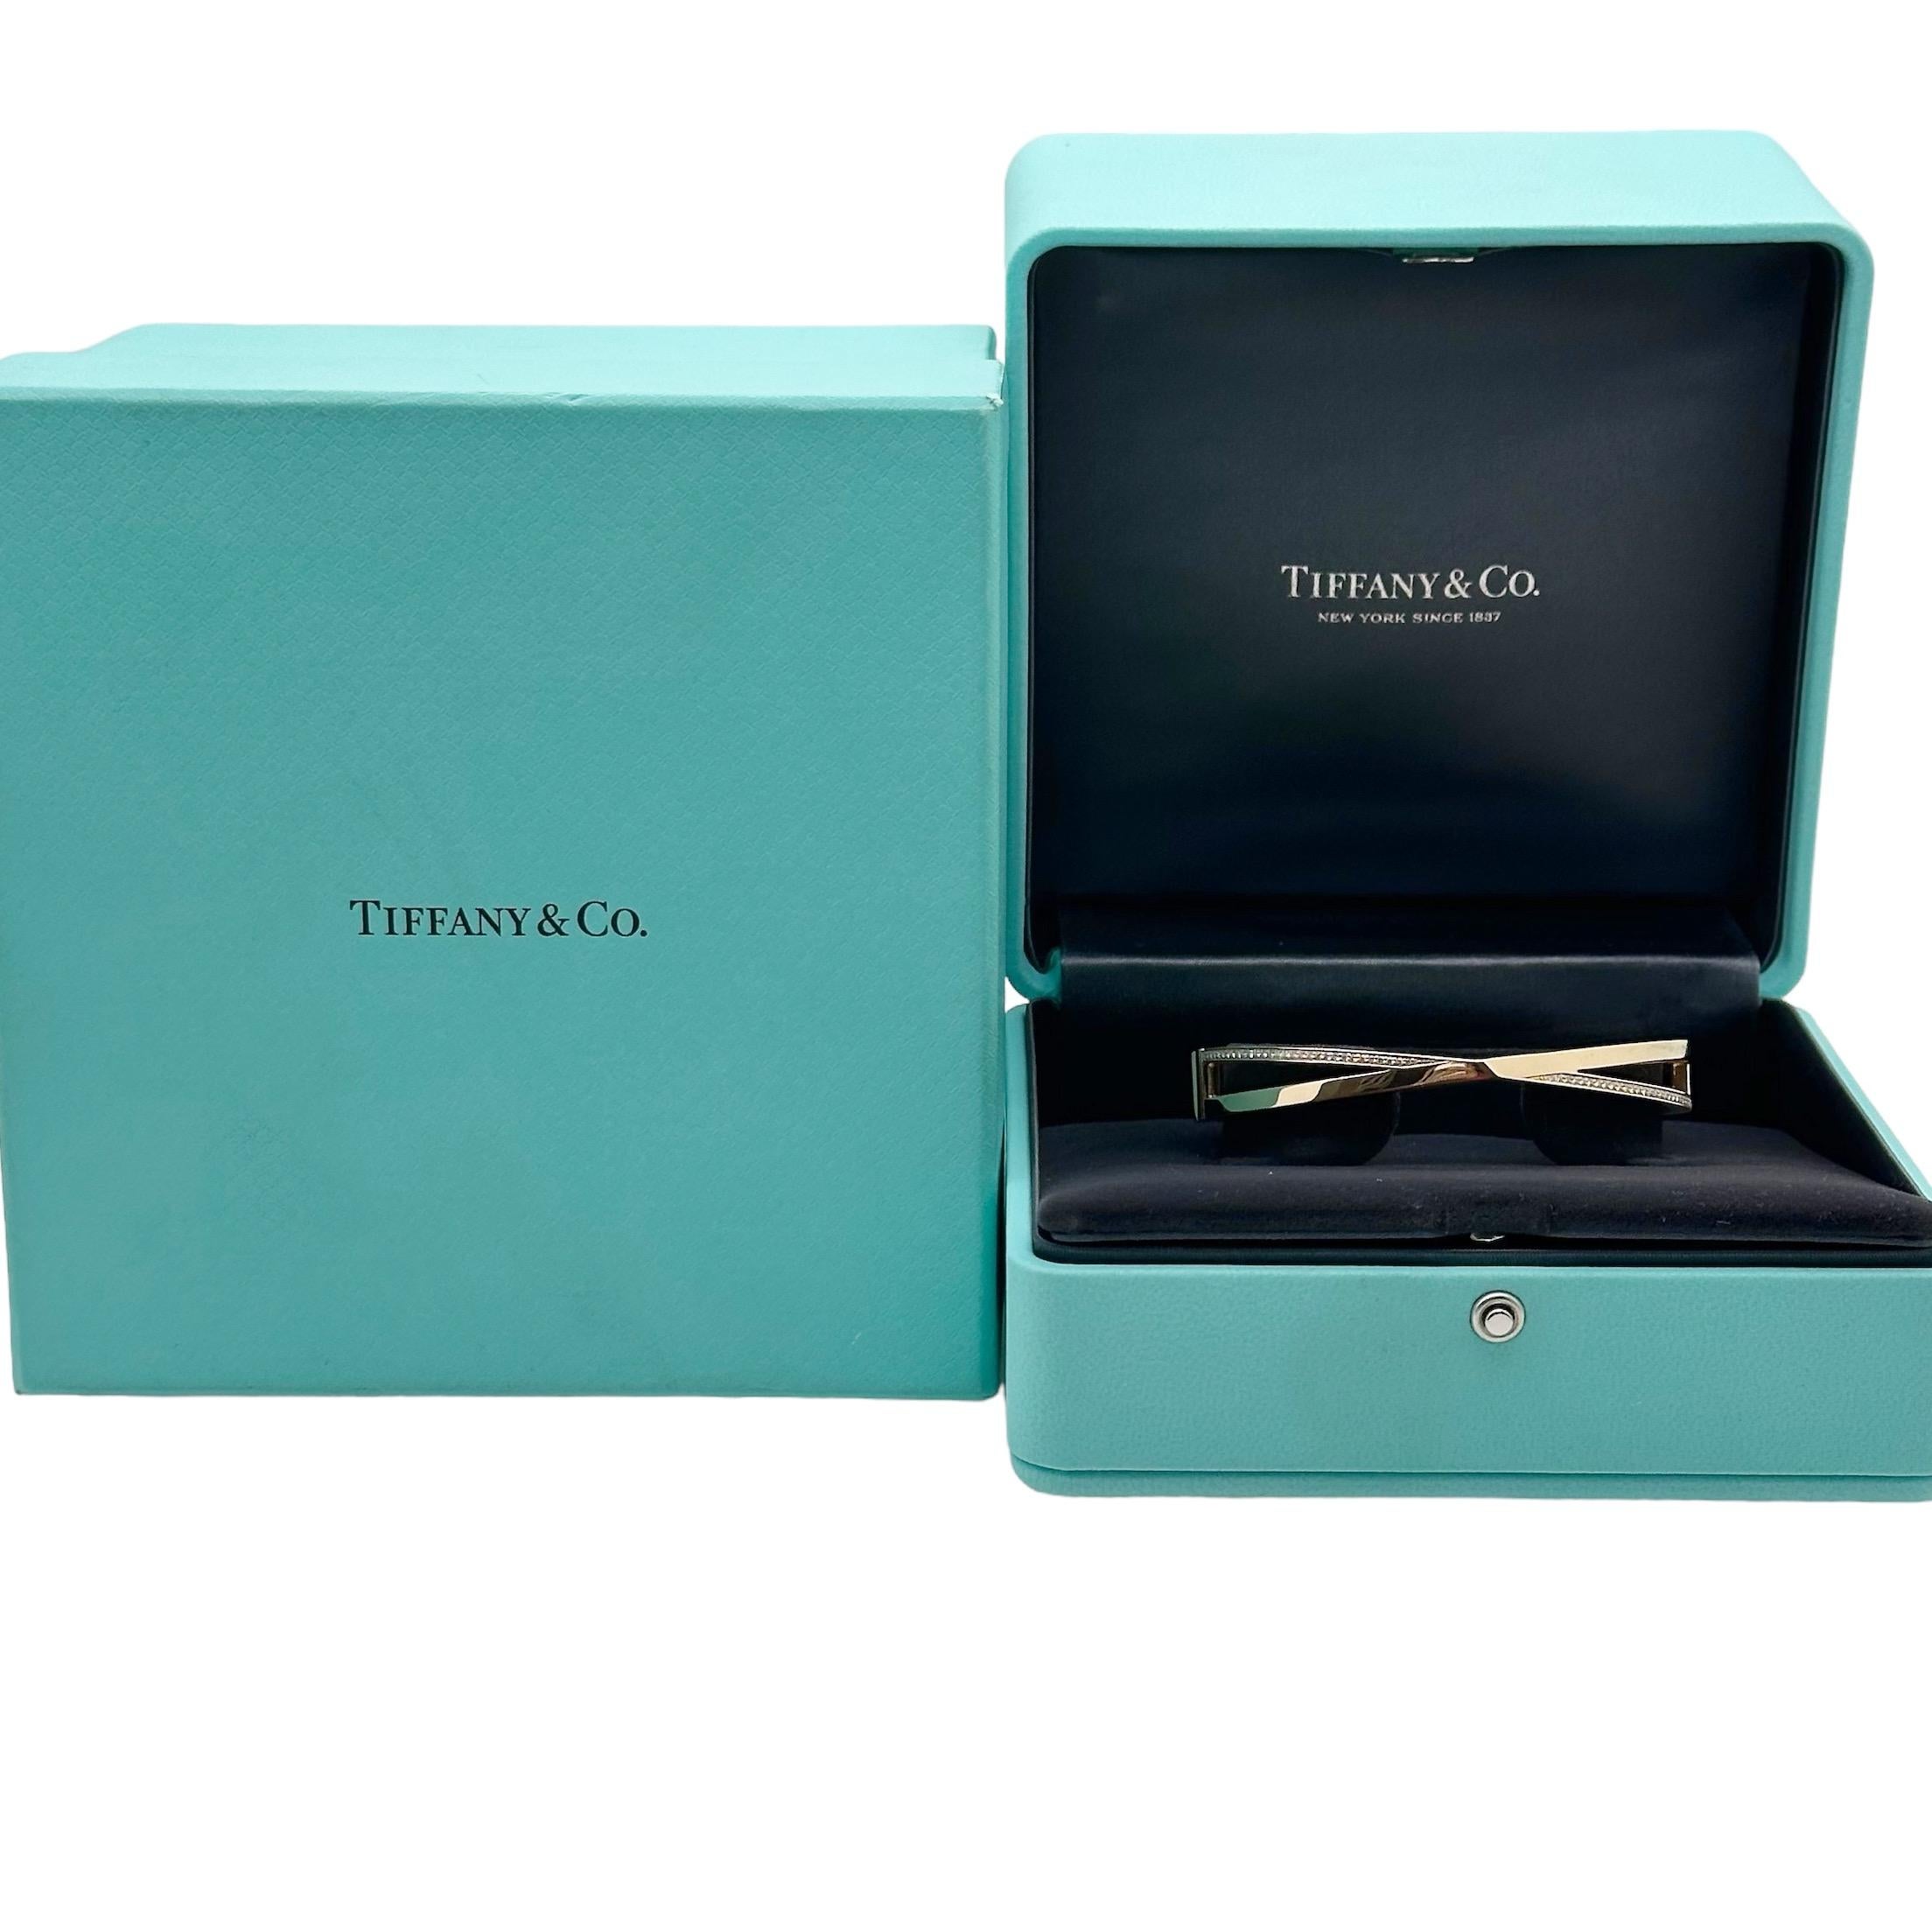 Tiffany & Co. X Schmaler Scharnierarmreif mit Diamanten
Stil:  Armreif
Referenznummer:  67809491
Metall:  18kt Rose Gold
Größe/Maße:  3 mm - 9 mm (für Handgelenke bis zu 6,25')
Hauptdiamant:  50 runde Brillanten 0,21 tcw
Wahrzeichen:  ©TIFFANY&CO.